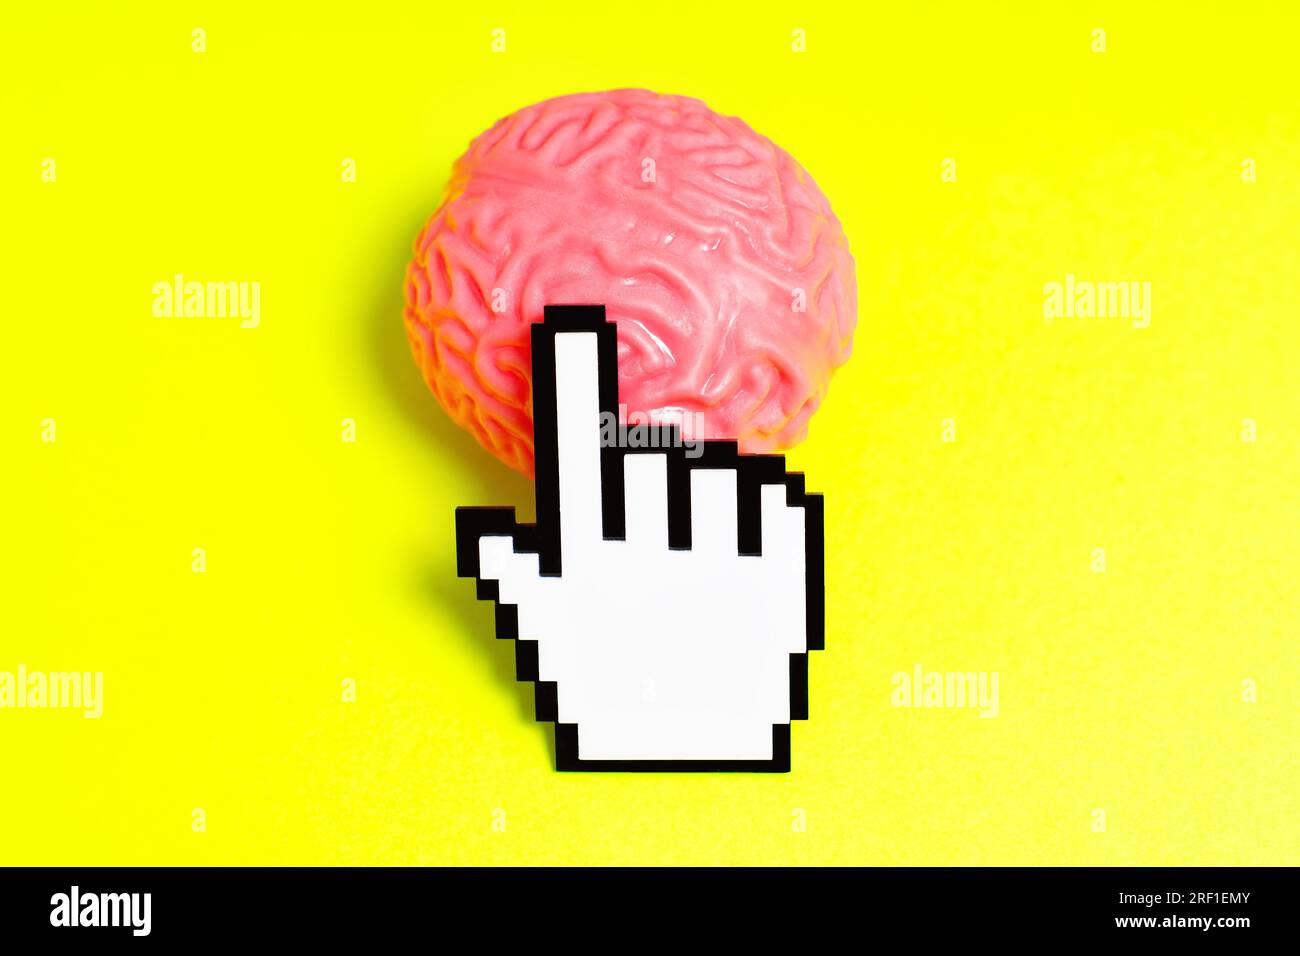 Plastisch verpixelter Hand-Cursor klickt auf ein pinkfarbenes menschliches Gehirnmodell, isoliert auf einem gelben Hintergrund. Stockfoto